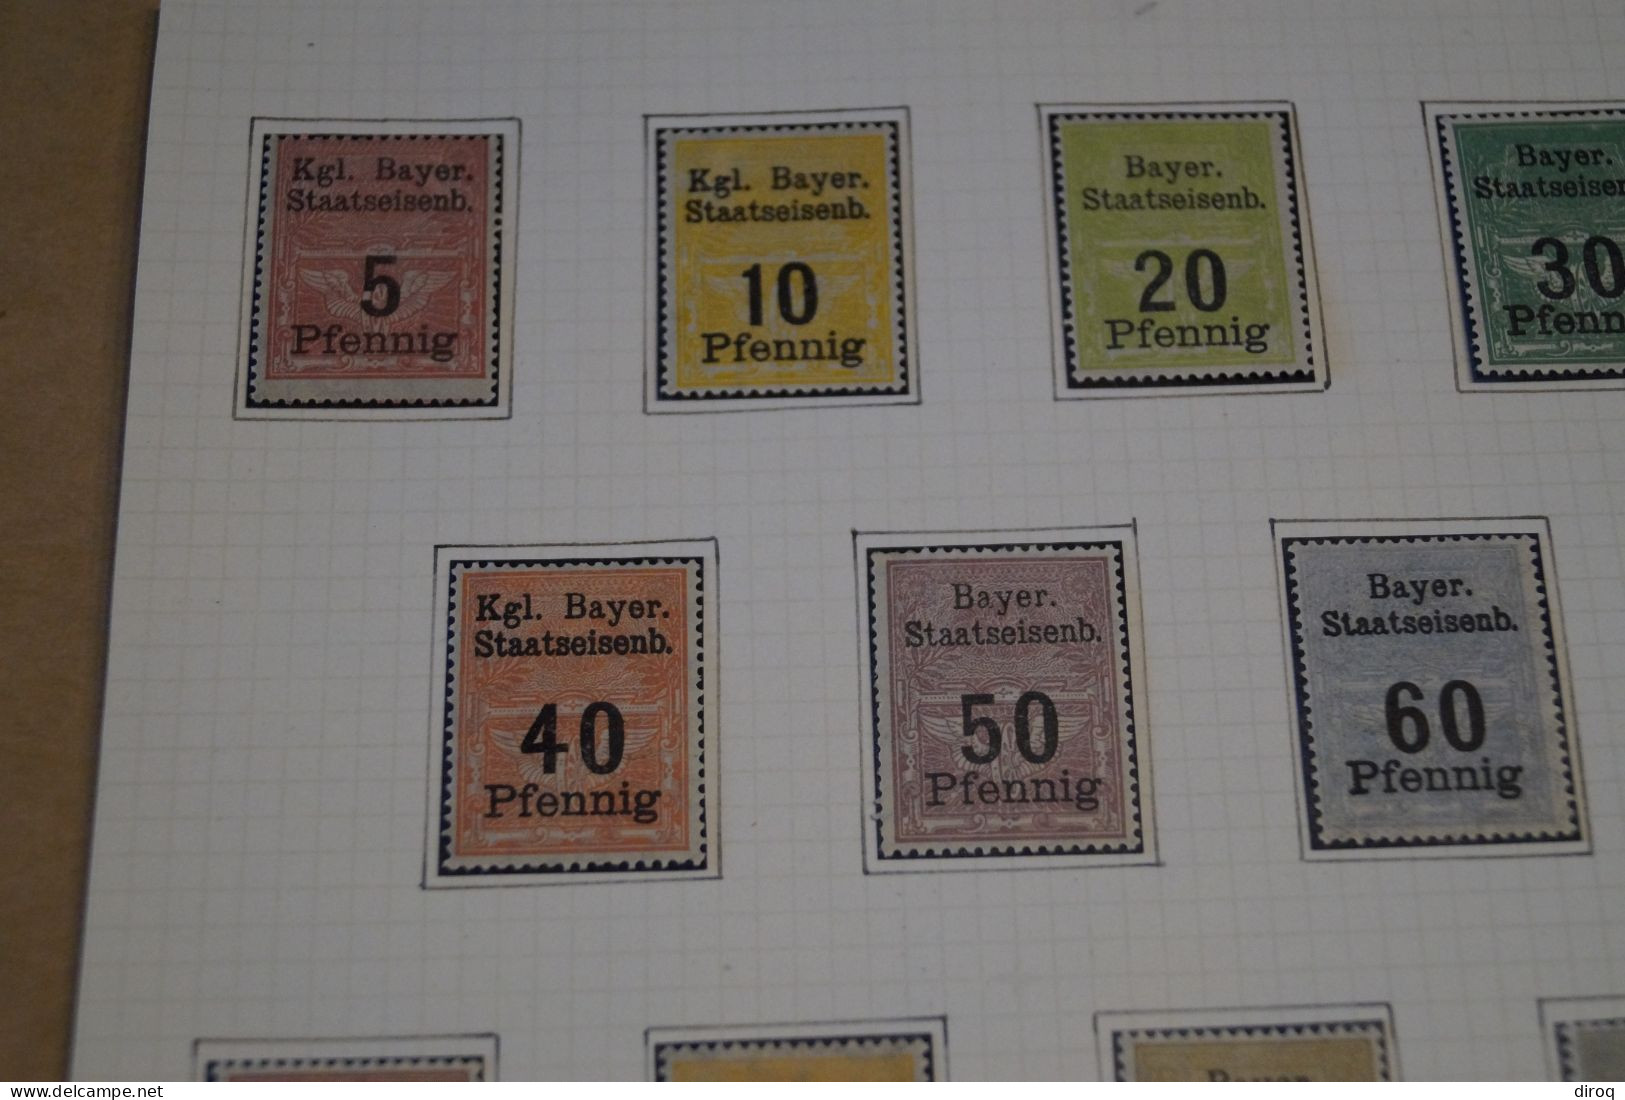 Très Belle Série 14 Timbres,Railway Stamps Bayer,chemin De Fer,1900,neuf Sur Charnière,bel état De Collection - Unused Stamps